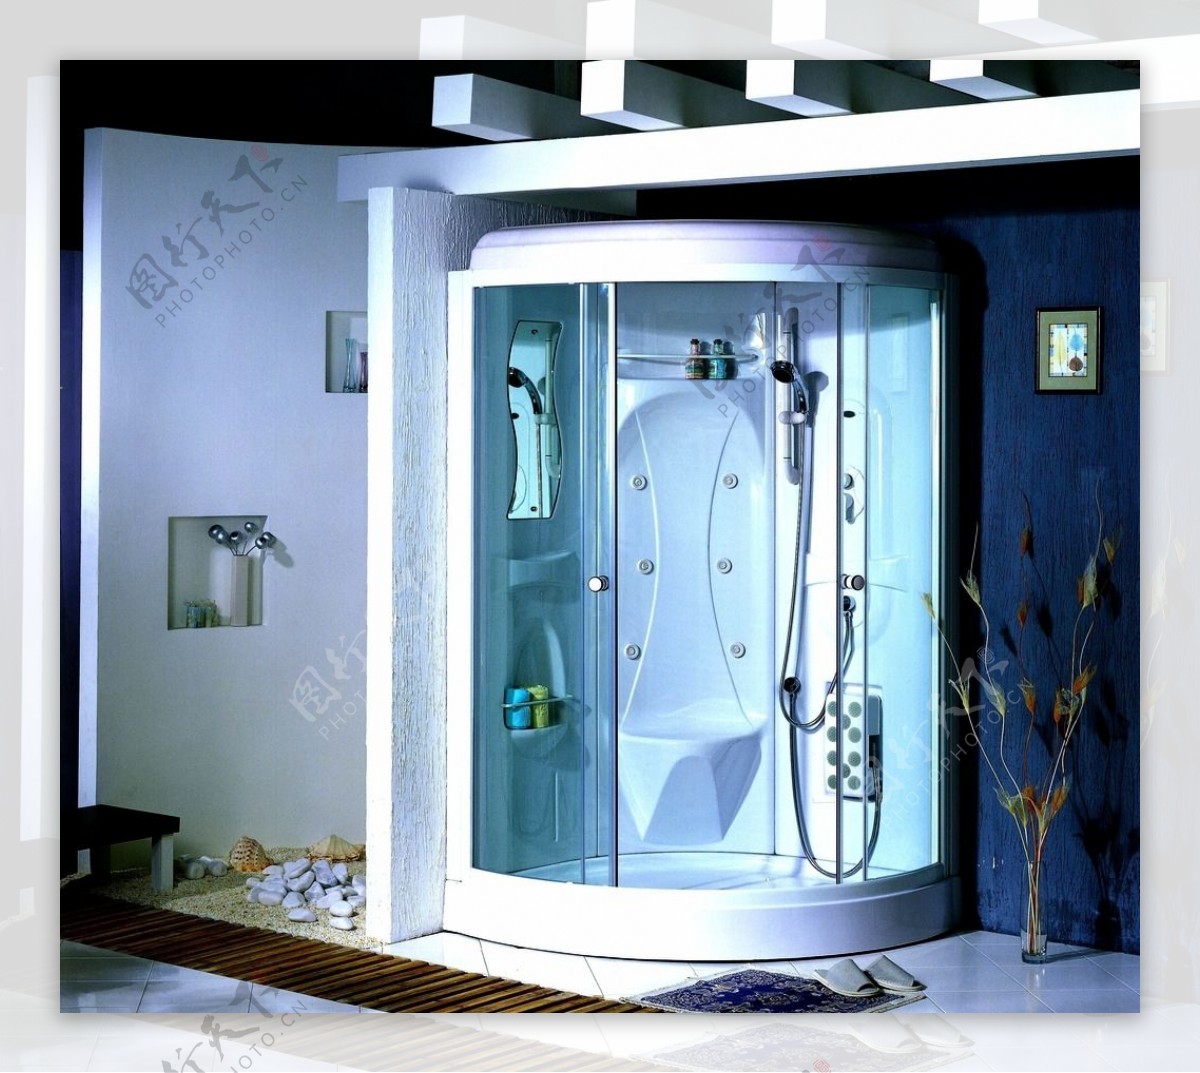 淋浴房卫浴玻璃居家装饰